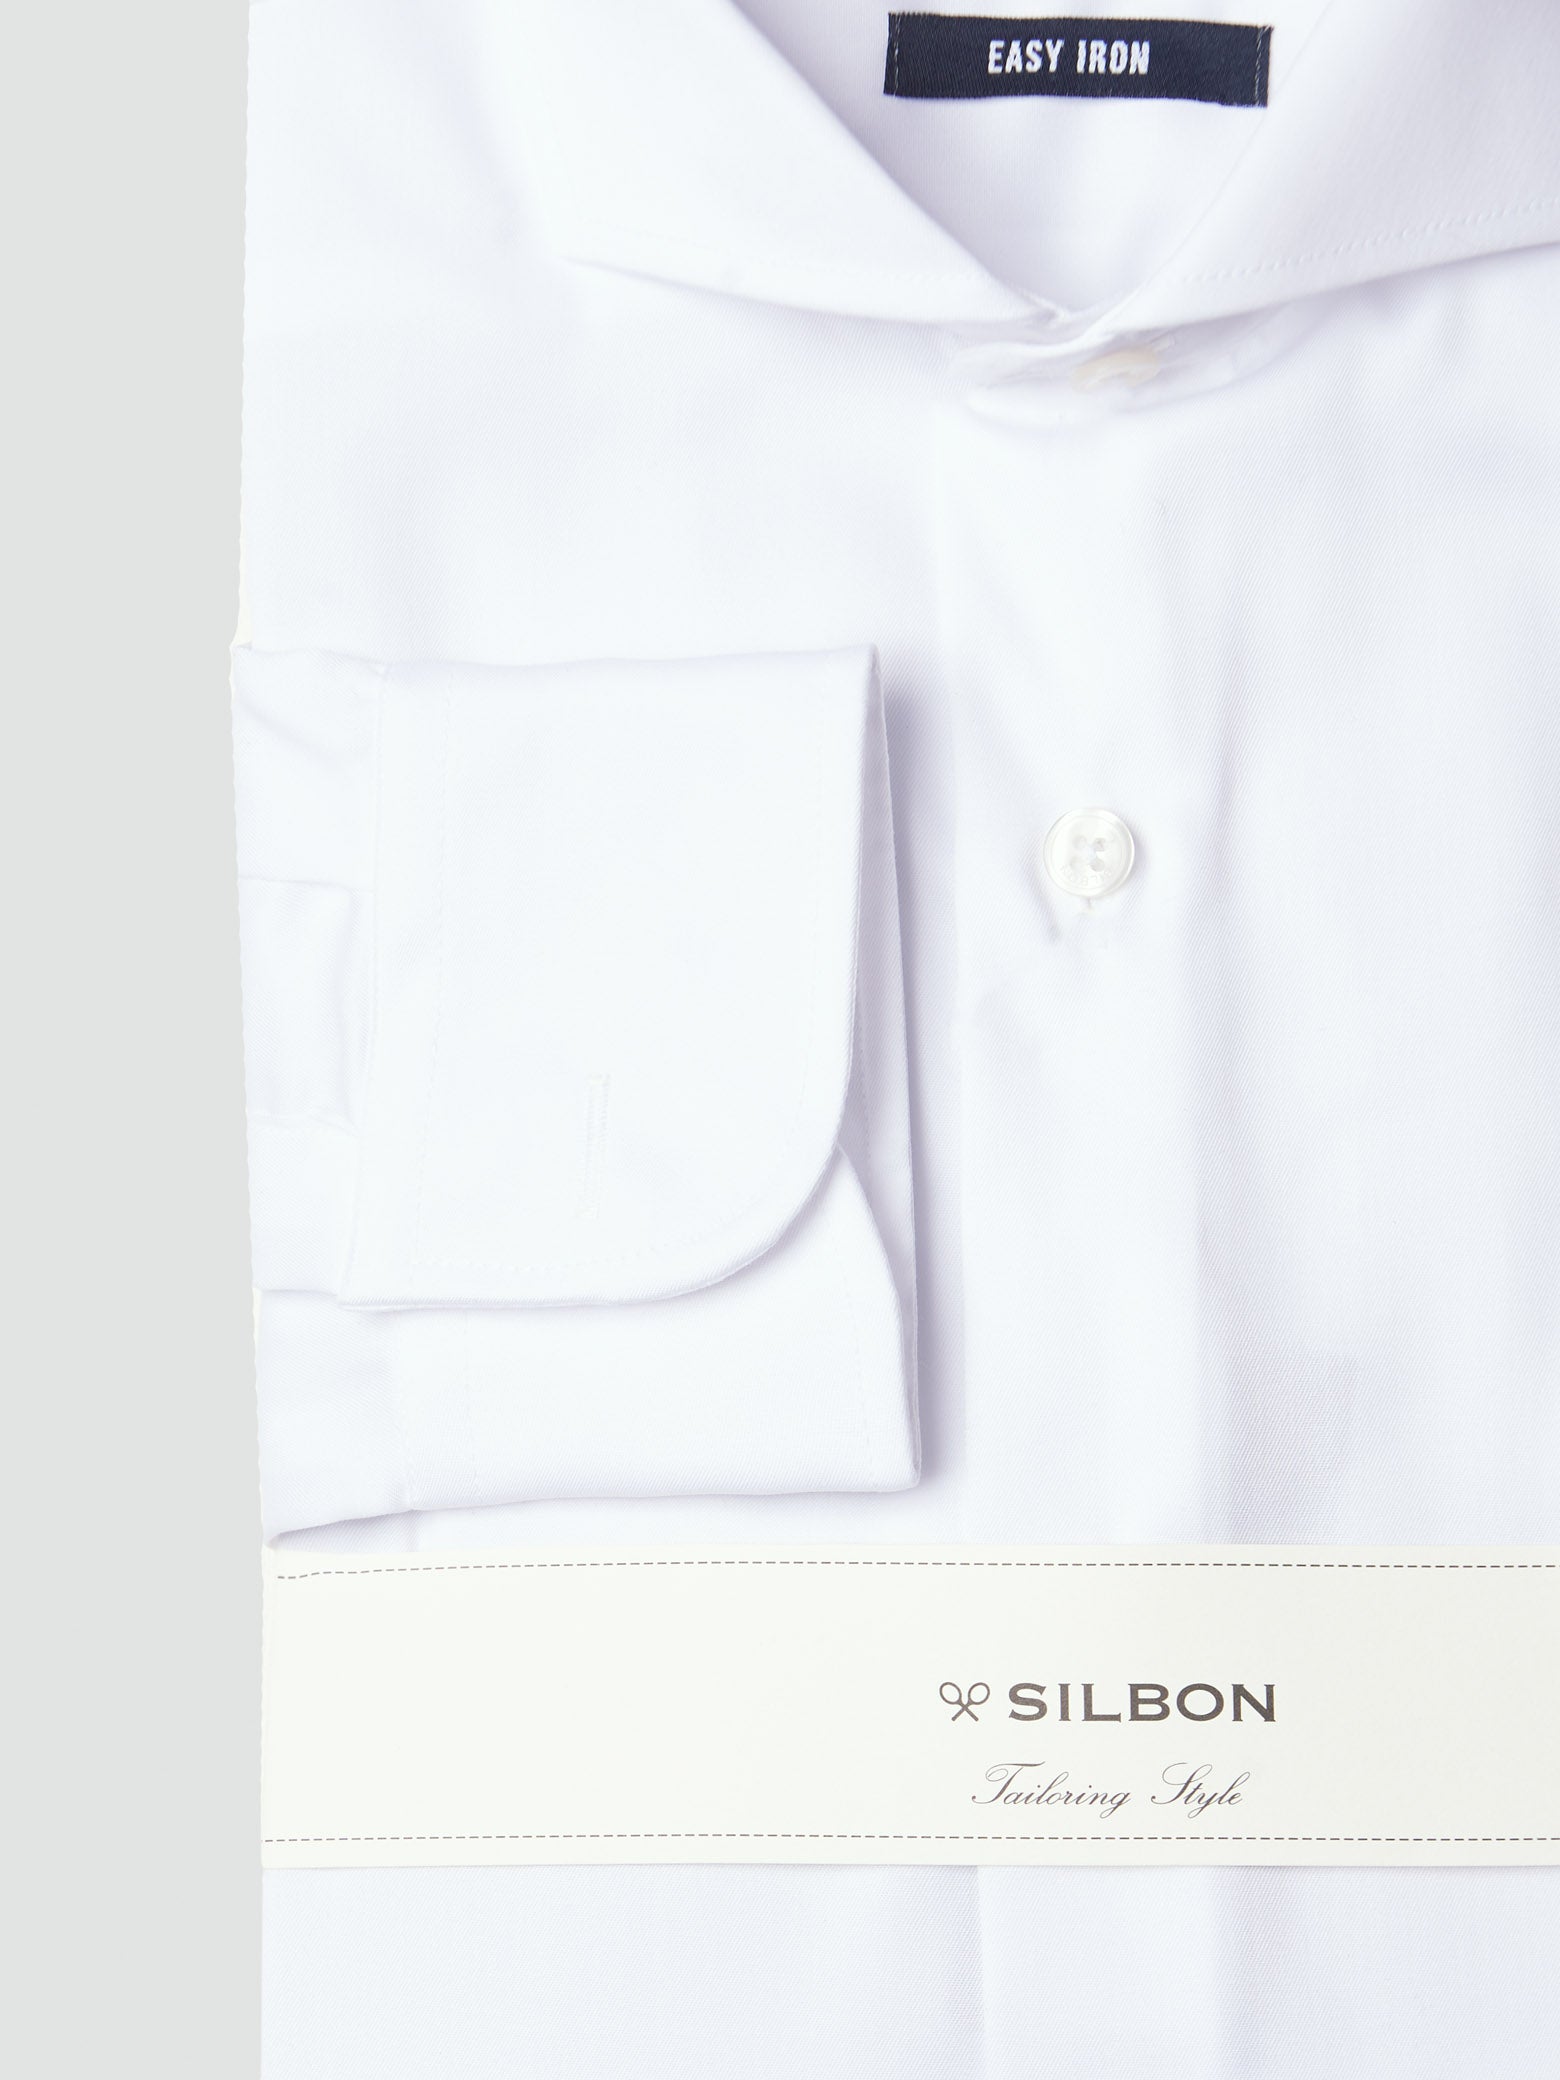 Camisa vestir blanca puño simple easy iron